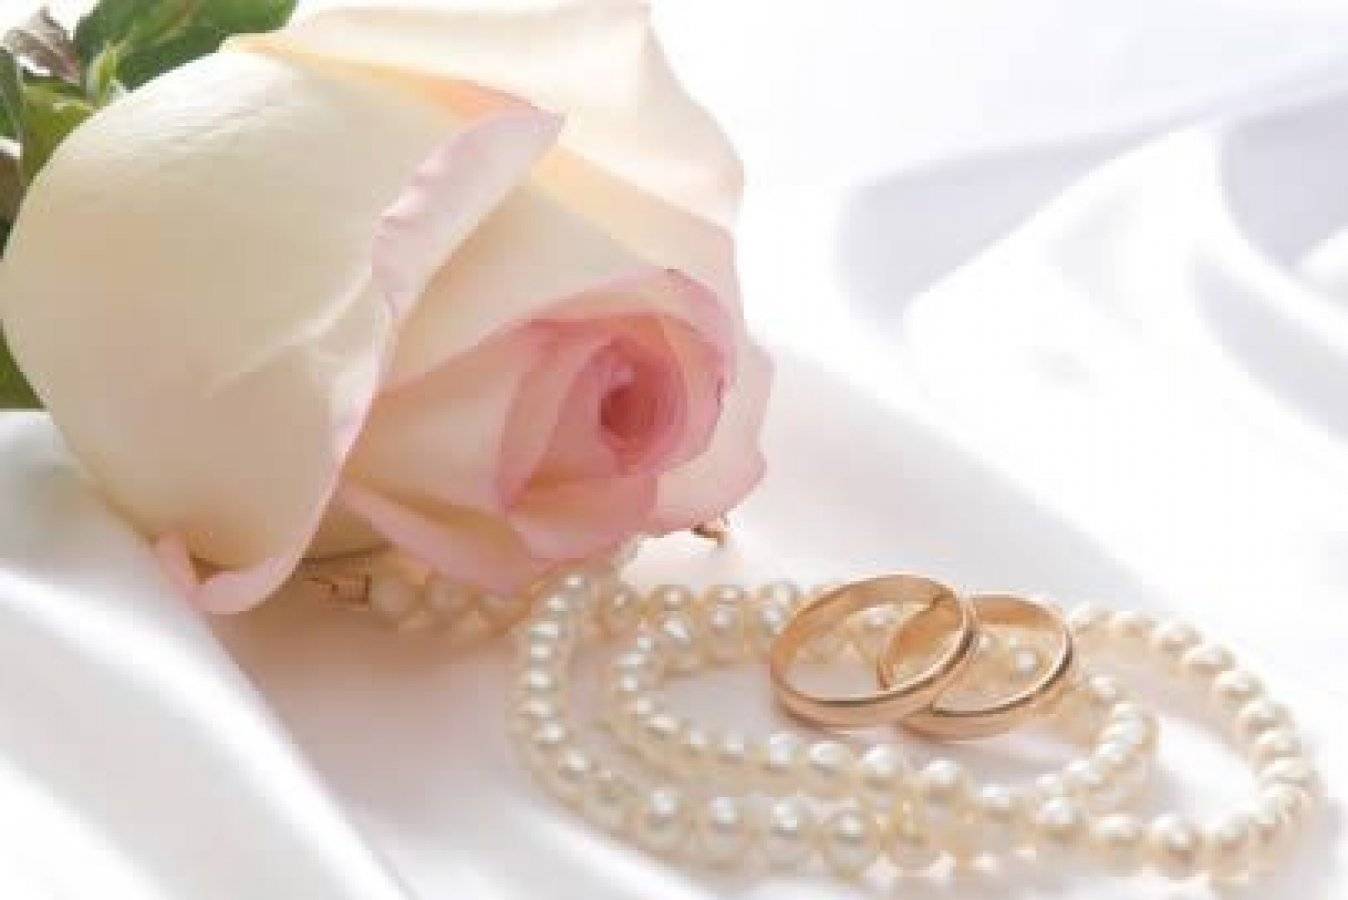 Свадьба 30 лет — какая это свадьба, что подарить, как поздравить с юбилеем?